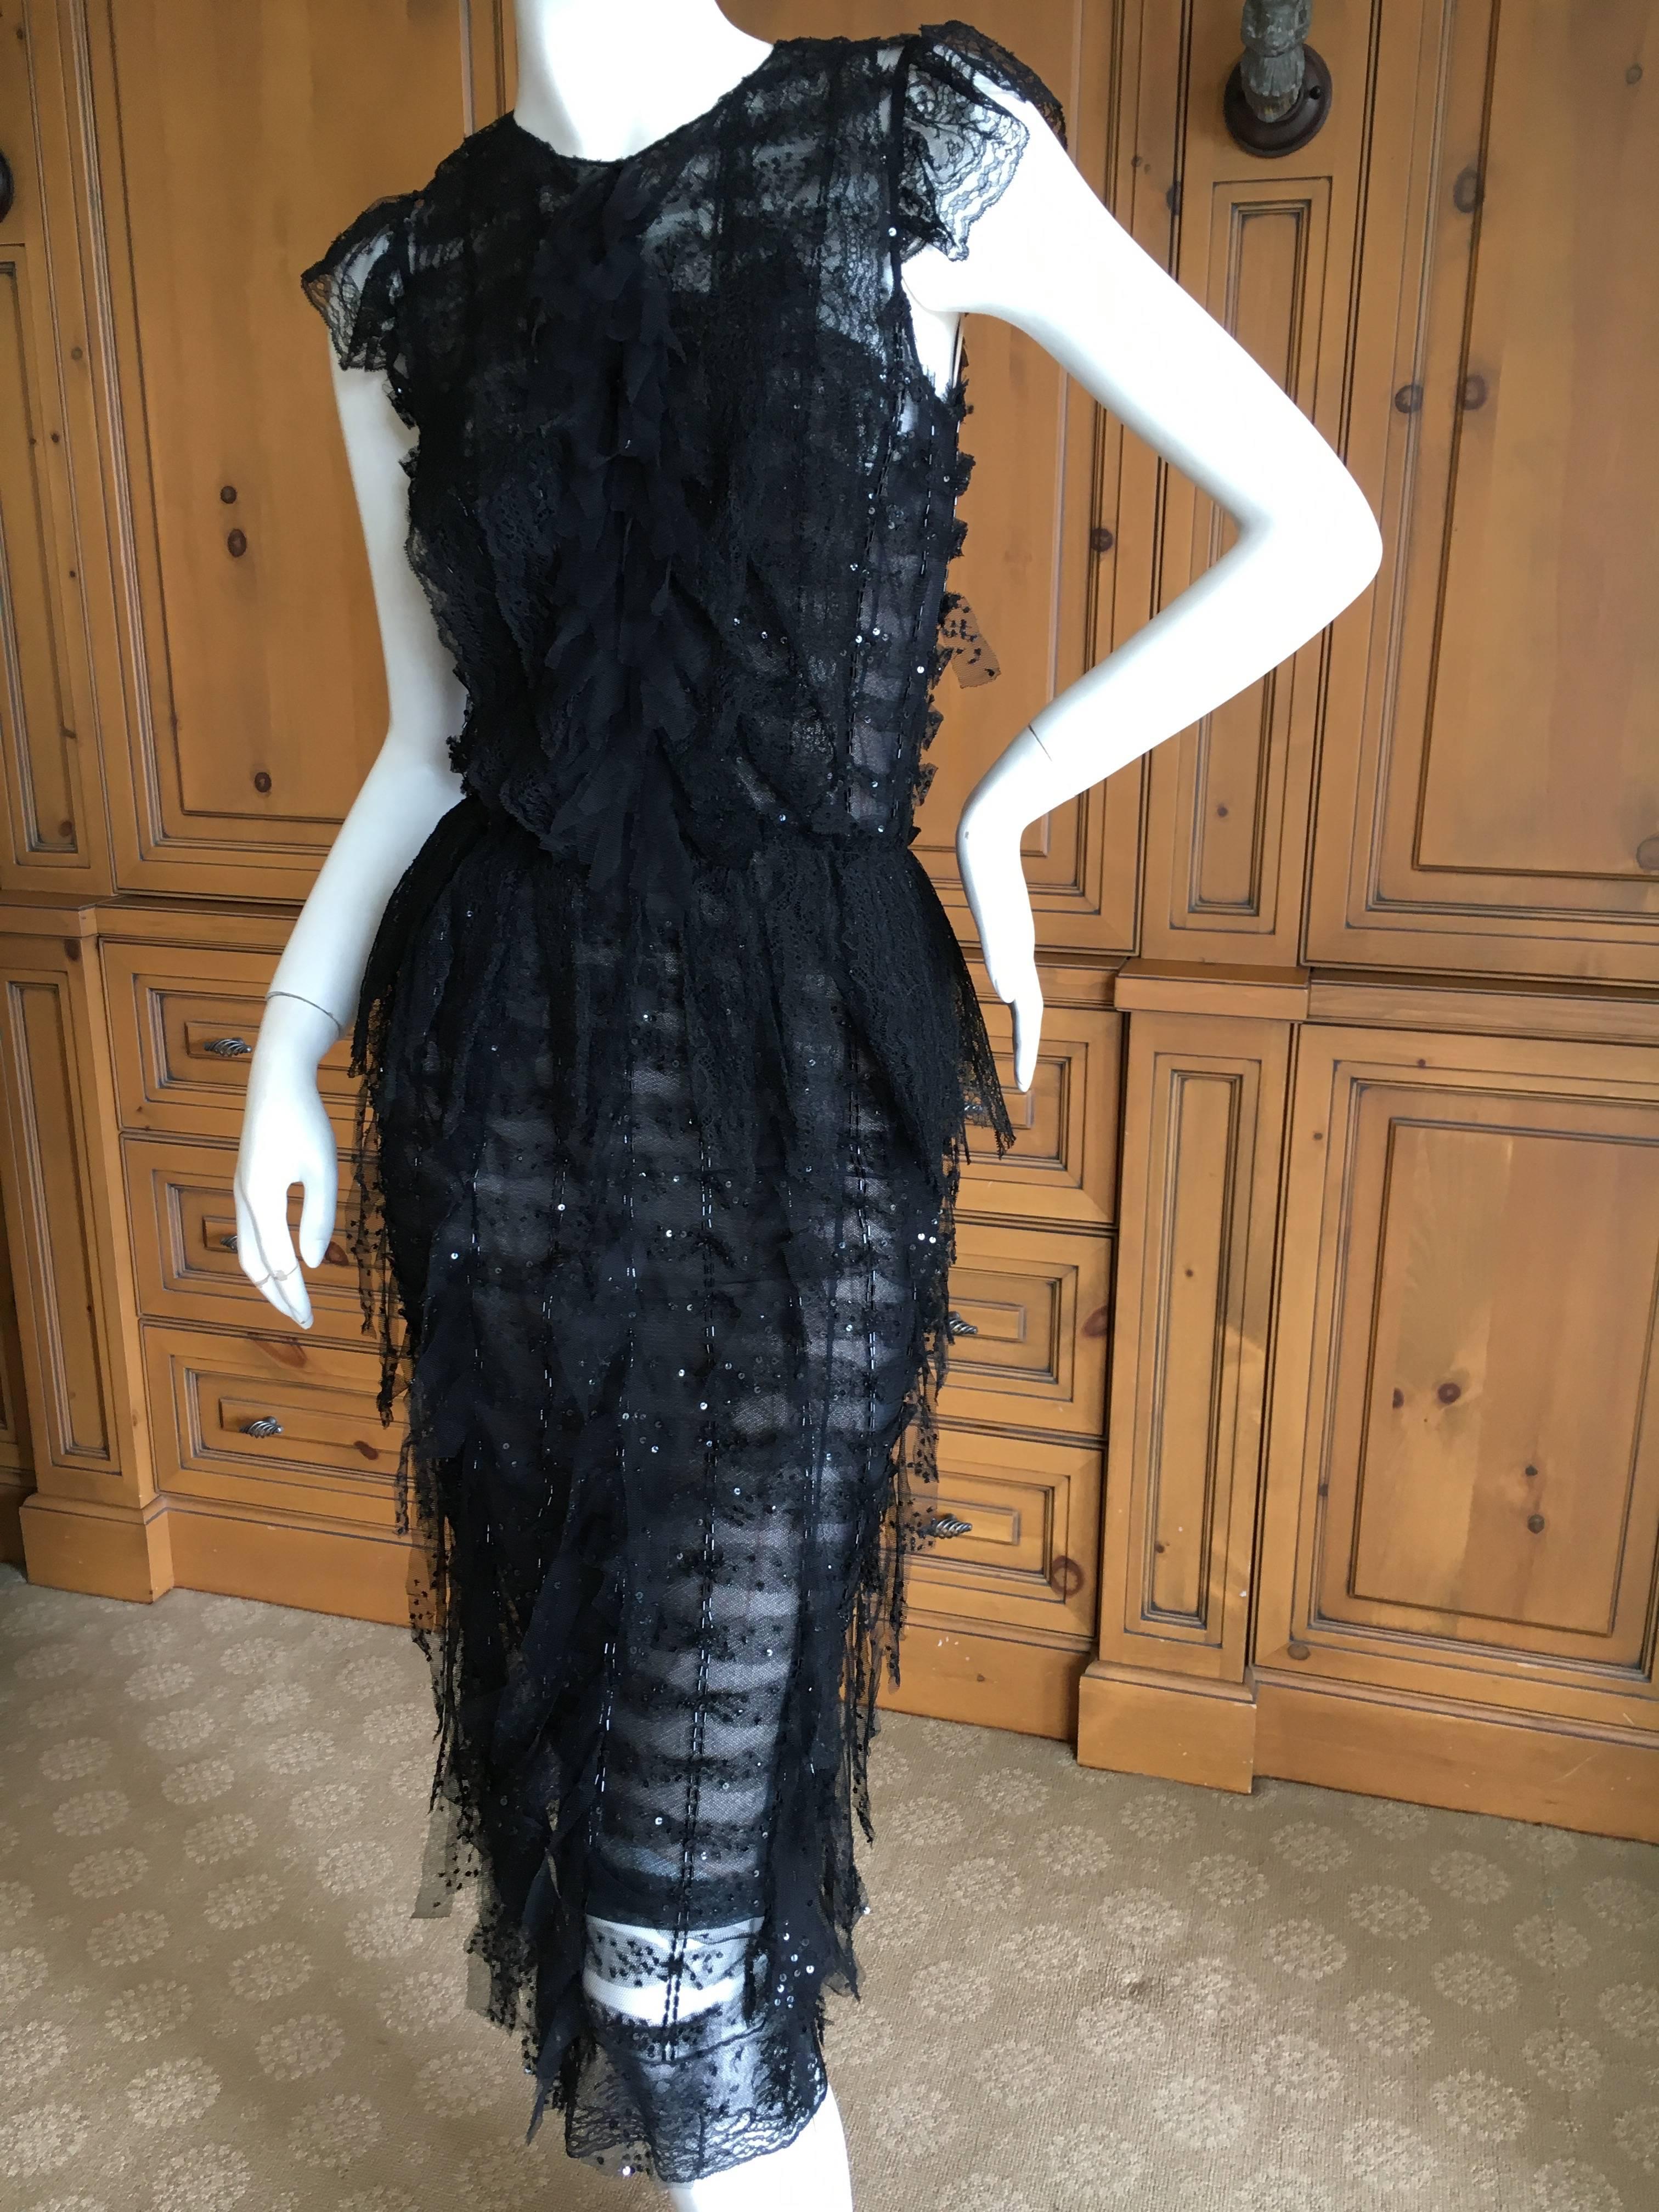 Oscar de la Renta Sheer Black Bugle Bead Embellished Cocktail Dress with Slip For Sale 4